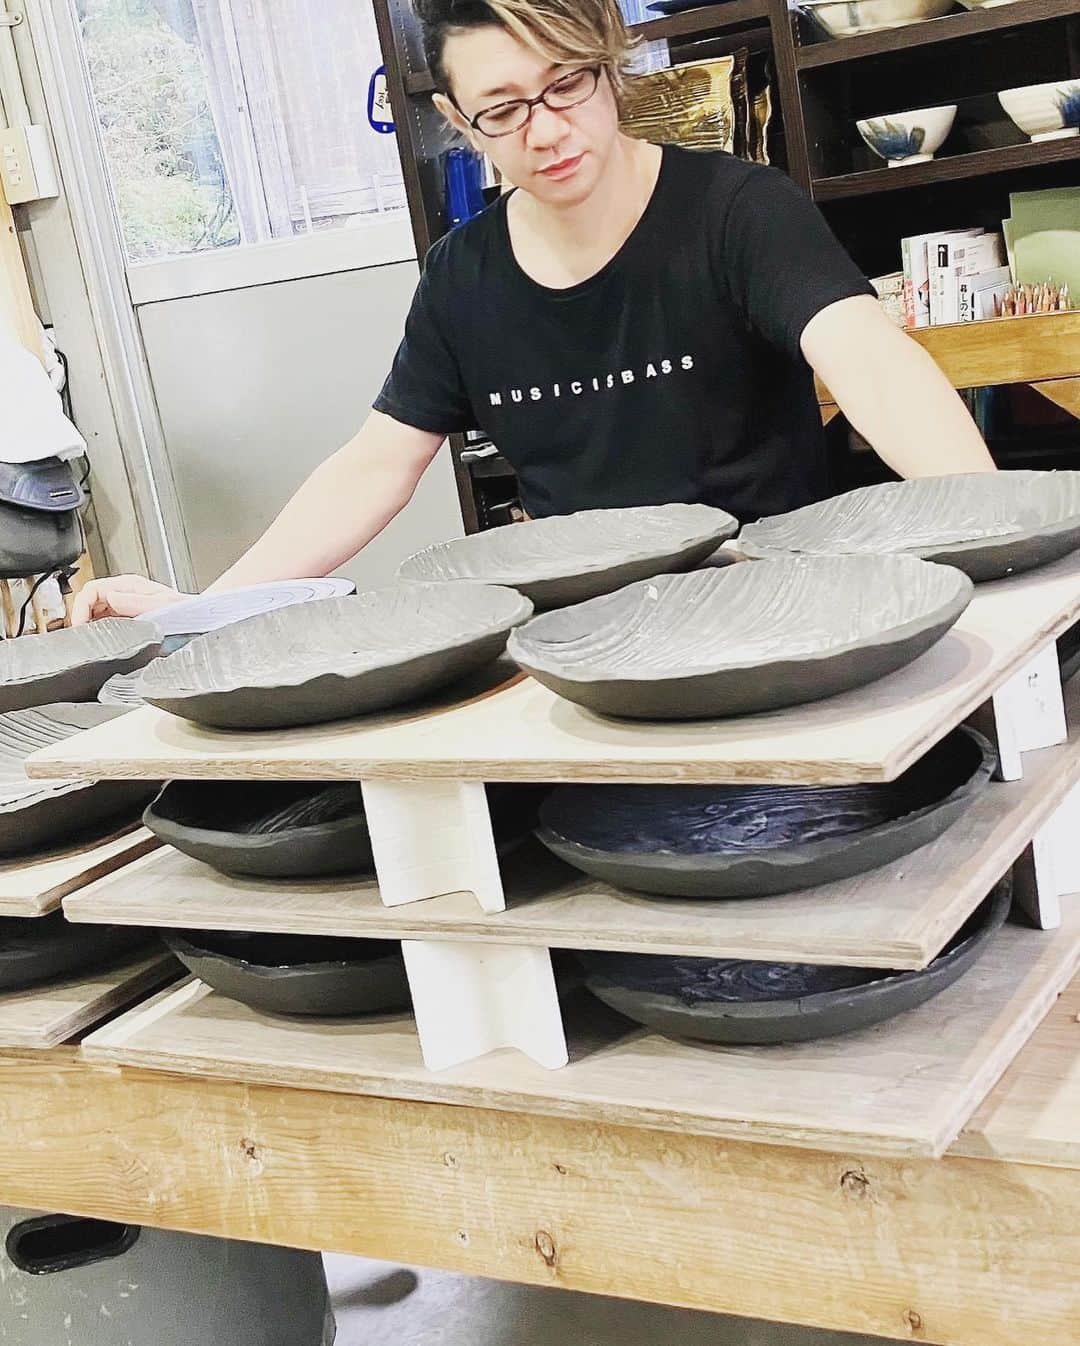 NATCHINのインスタグラム：「2022年10月下旬、宮城県大崎市にある「Art-Glaze 田尻大沢窯」で製作した『なっちん皿』の販売を開始しました。  たたら製法で成形をした後に乾燥させて素焼き。その後に釉薬(うわぐすり)で色付けし1230度の高温で本焼きを行い完成。  角皿、丸皿、小皿の3種類でお正月の食卓を賑やかにしてみては、いかがでしょうか？  yakkun.shop」